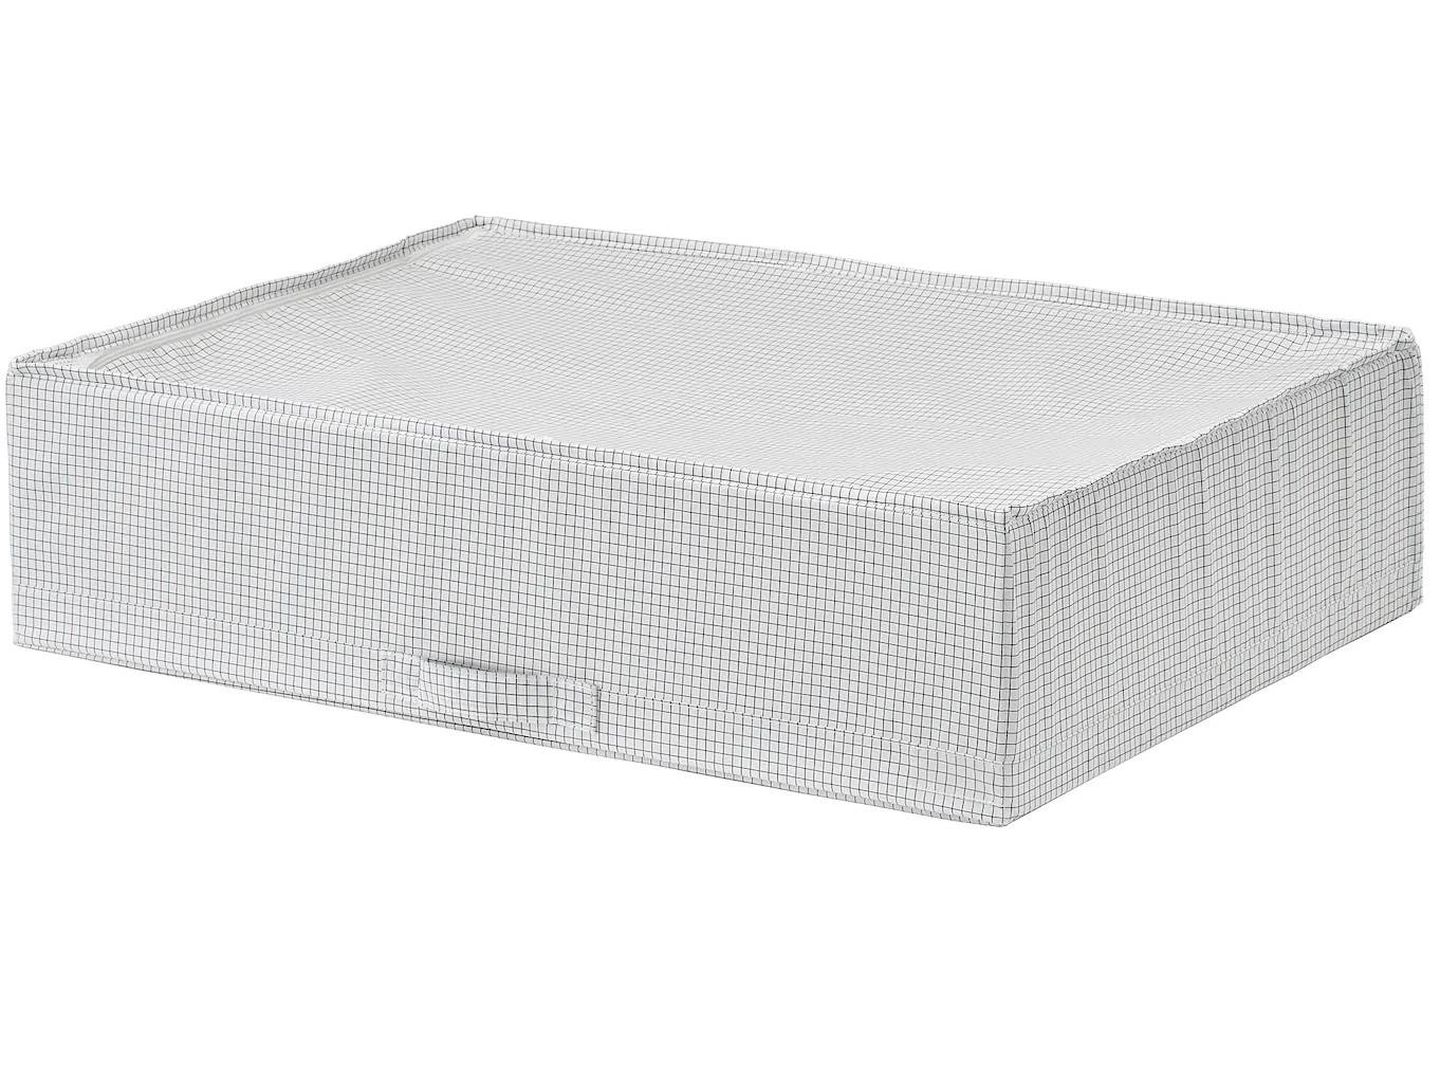 Caja Stuk de Ikea, ideal para almacenar bajo la cama. (Cortesía)